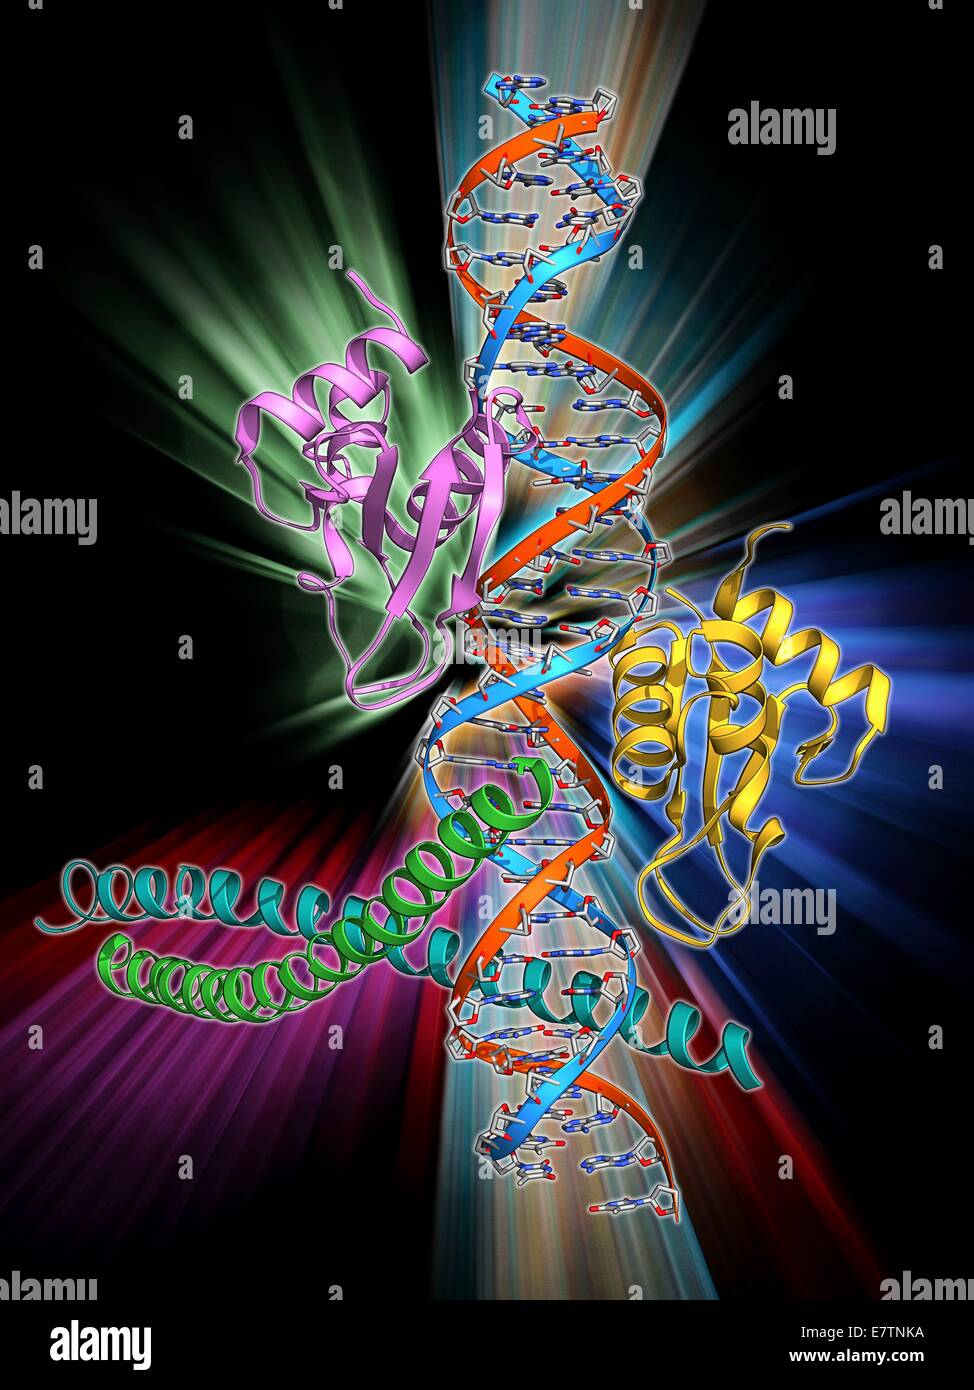 Activación de la transcripción del gen de IFN-beta. Modelo molecular de un enhanceosome que contiene los factores de transcripción IRF-3, ATF-2 y c-Jun enlazado al interferón beta (IFN-beta) enhancer en una hebra de ADN (ácido desoxirribonucleico, rojo y azul). La activación Foto de stock